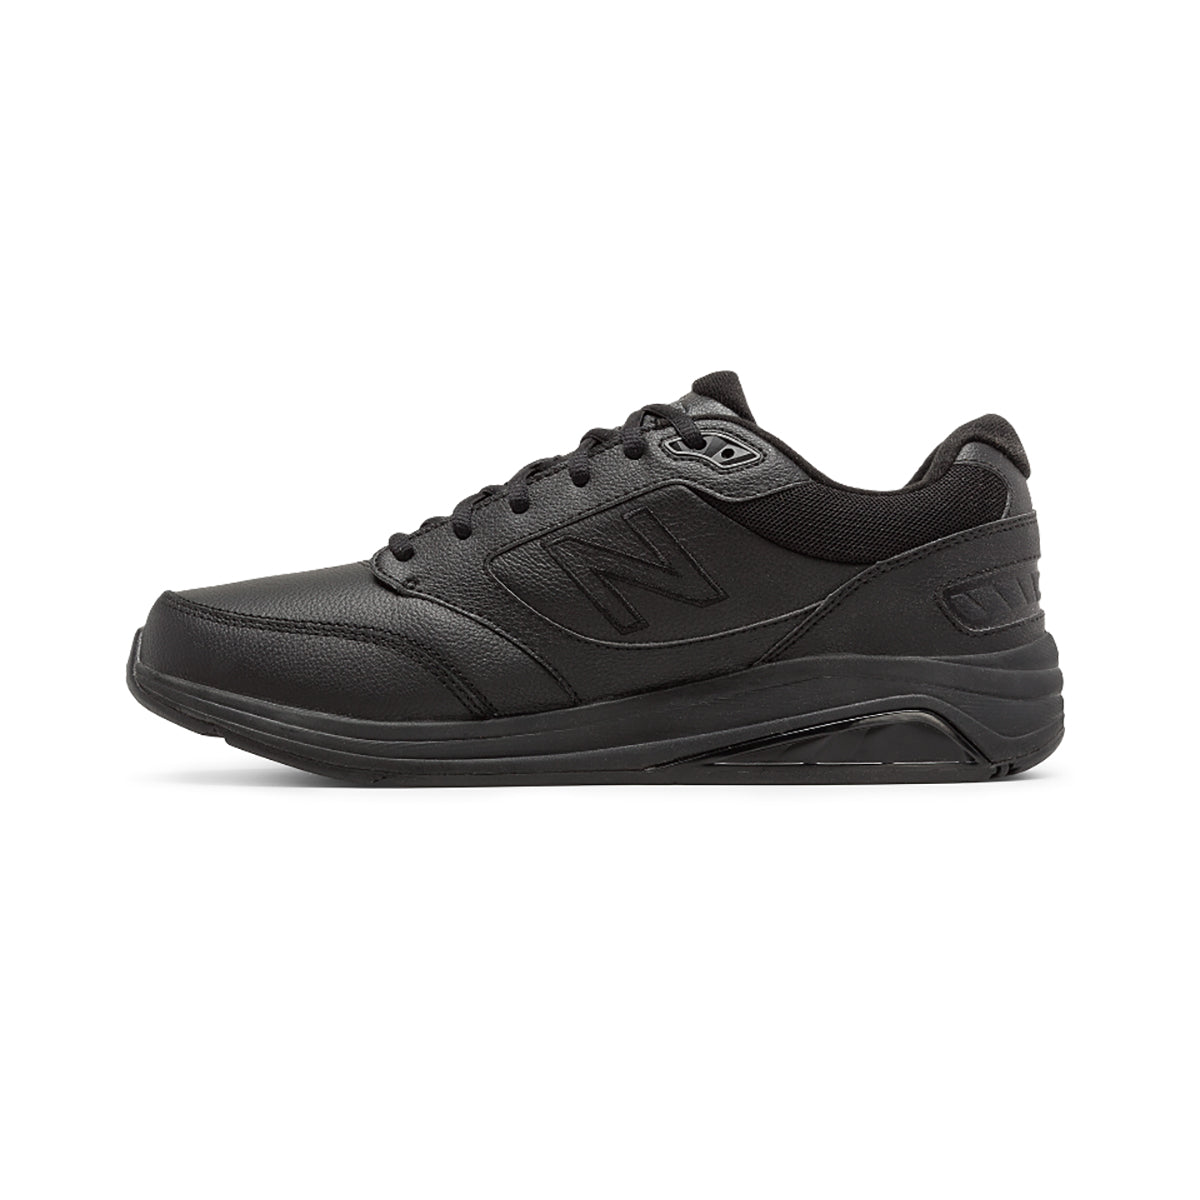 Men's Leather 928 v3 Walking Shoes - Black - Wide (EE)